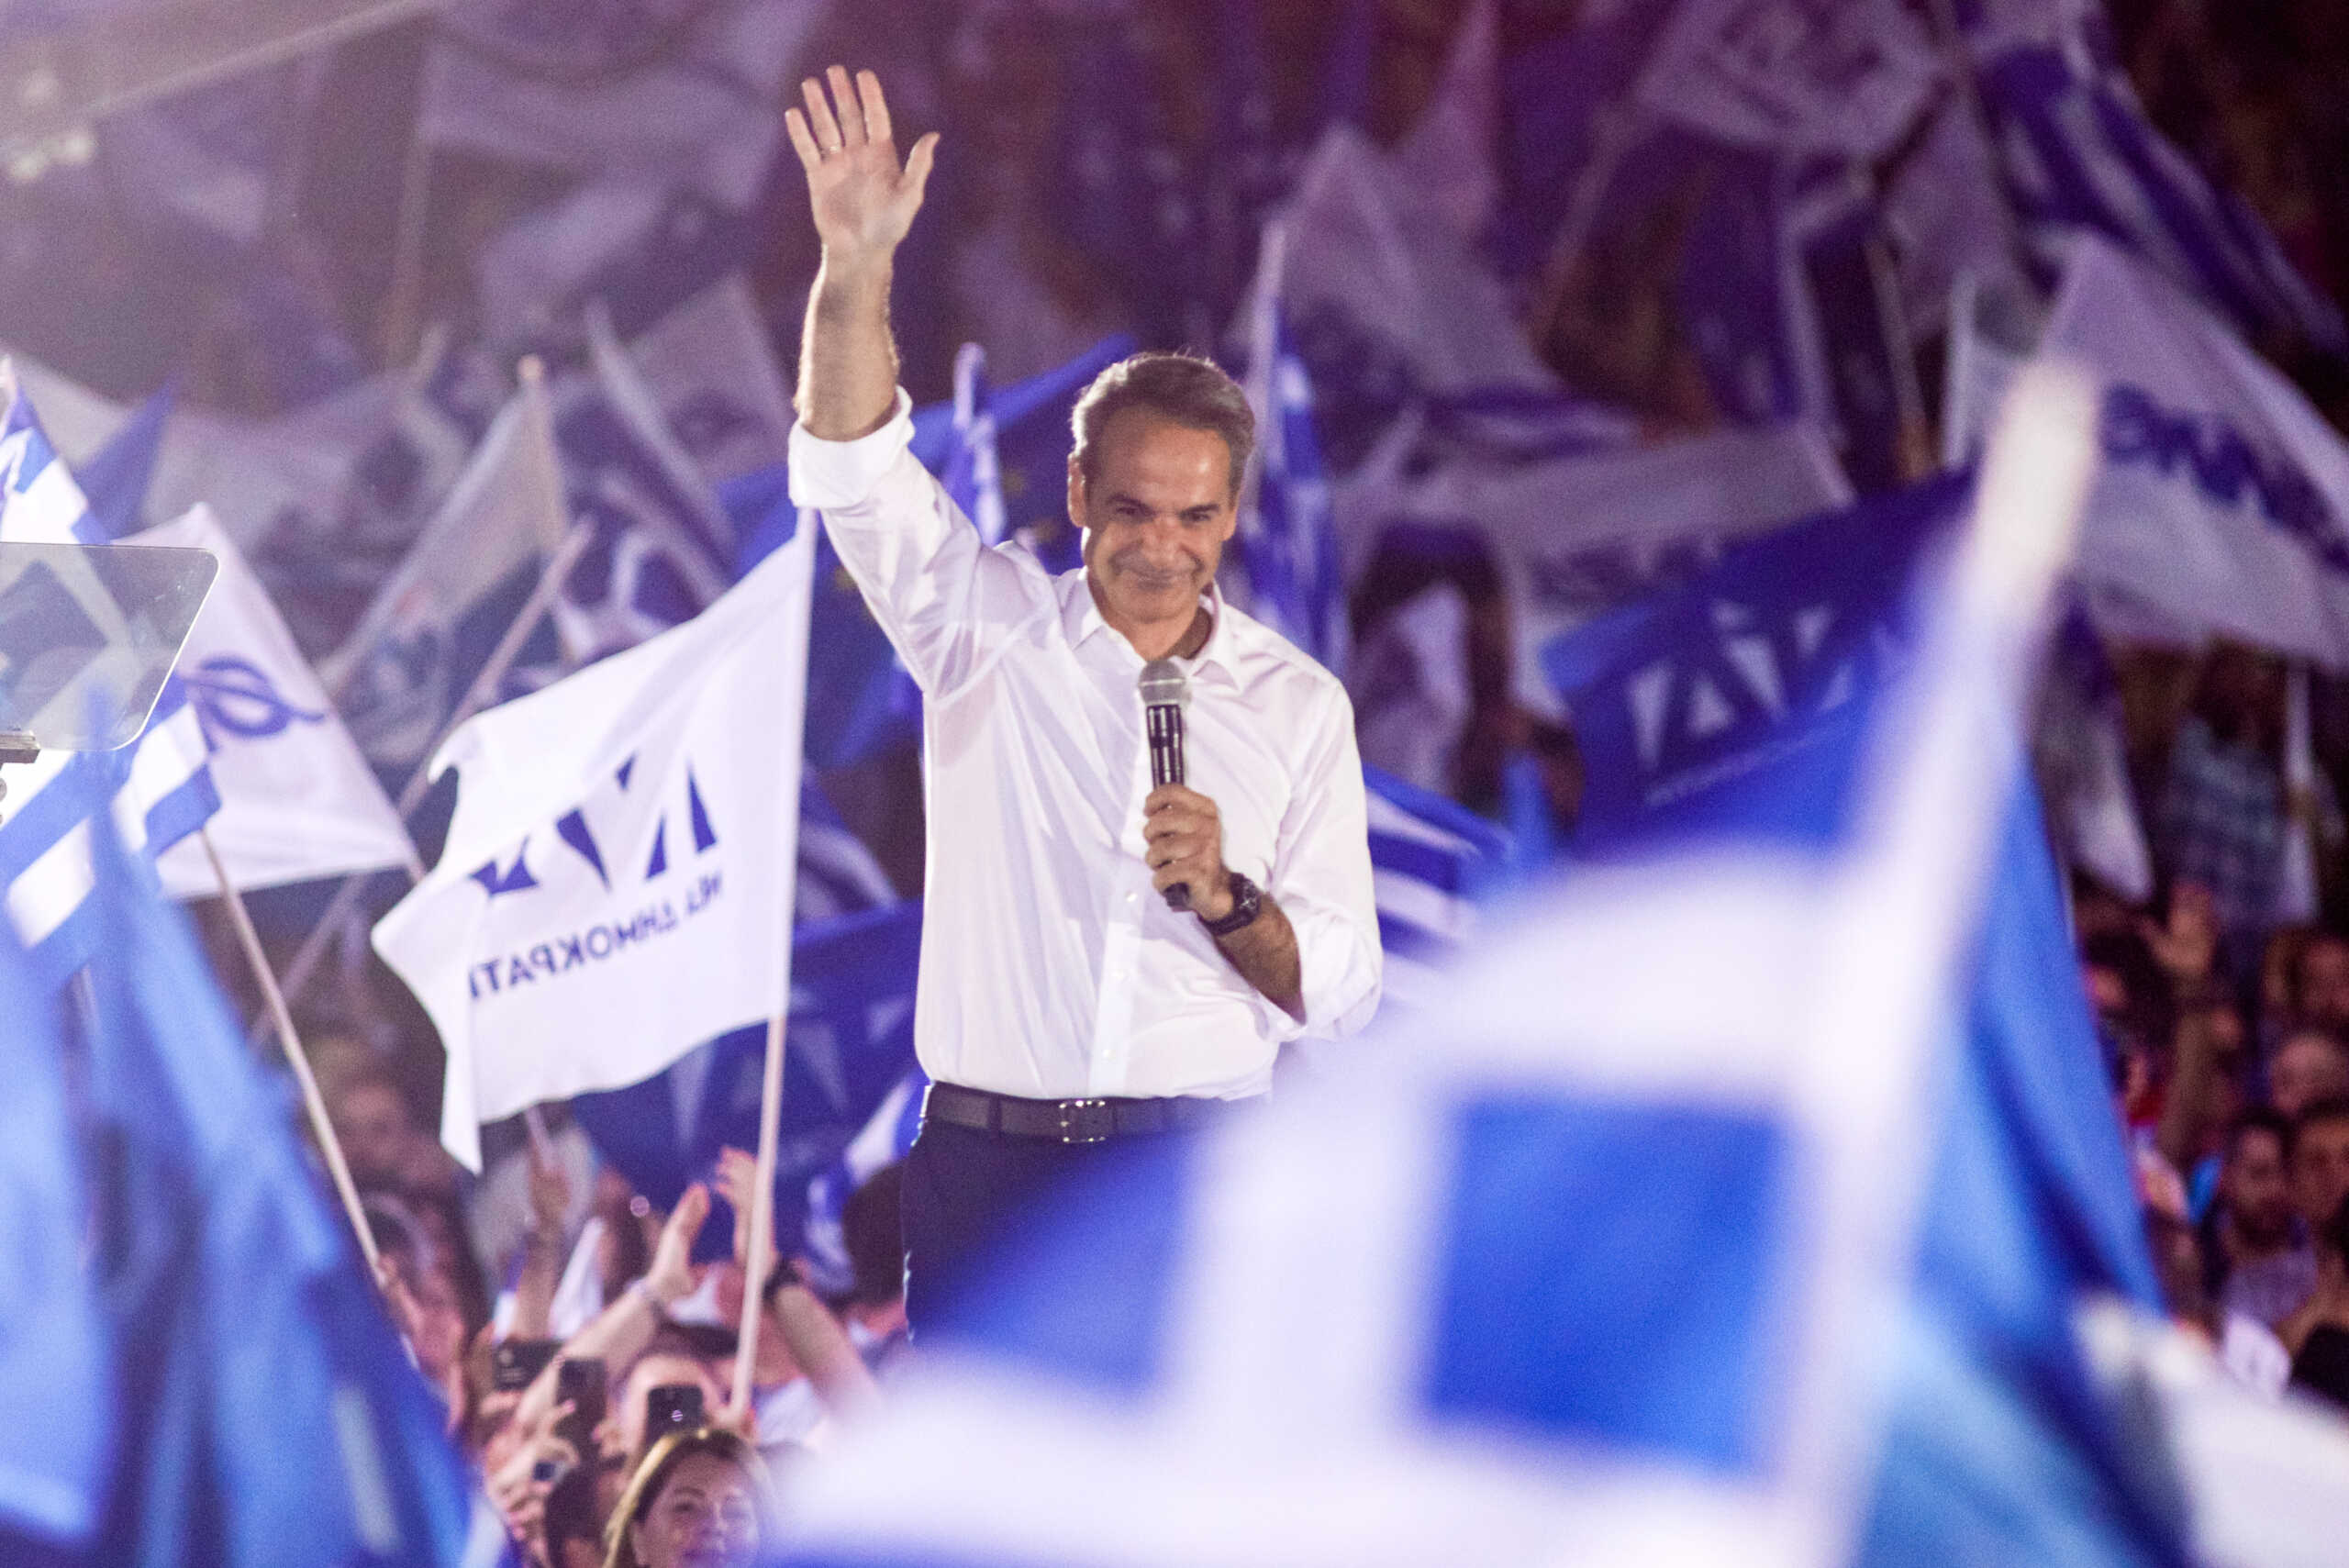 Κυριάκος Μητσοτάκης: Δυνατή ΝΔ στην Ελλάδα σημαίνει και δυνατή Ελλάδα στην Ευρώπη – Η ομιλία στο Σύνταγμα